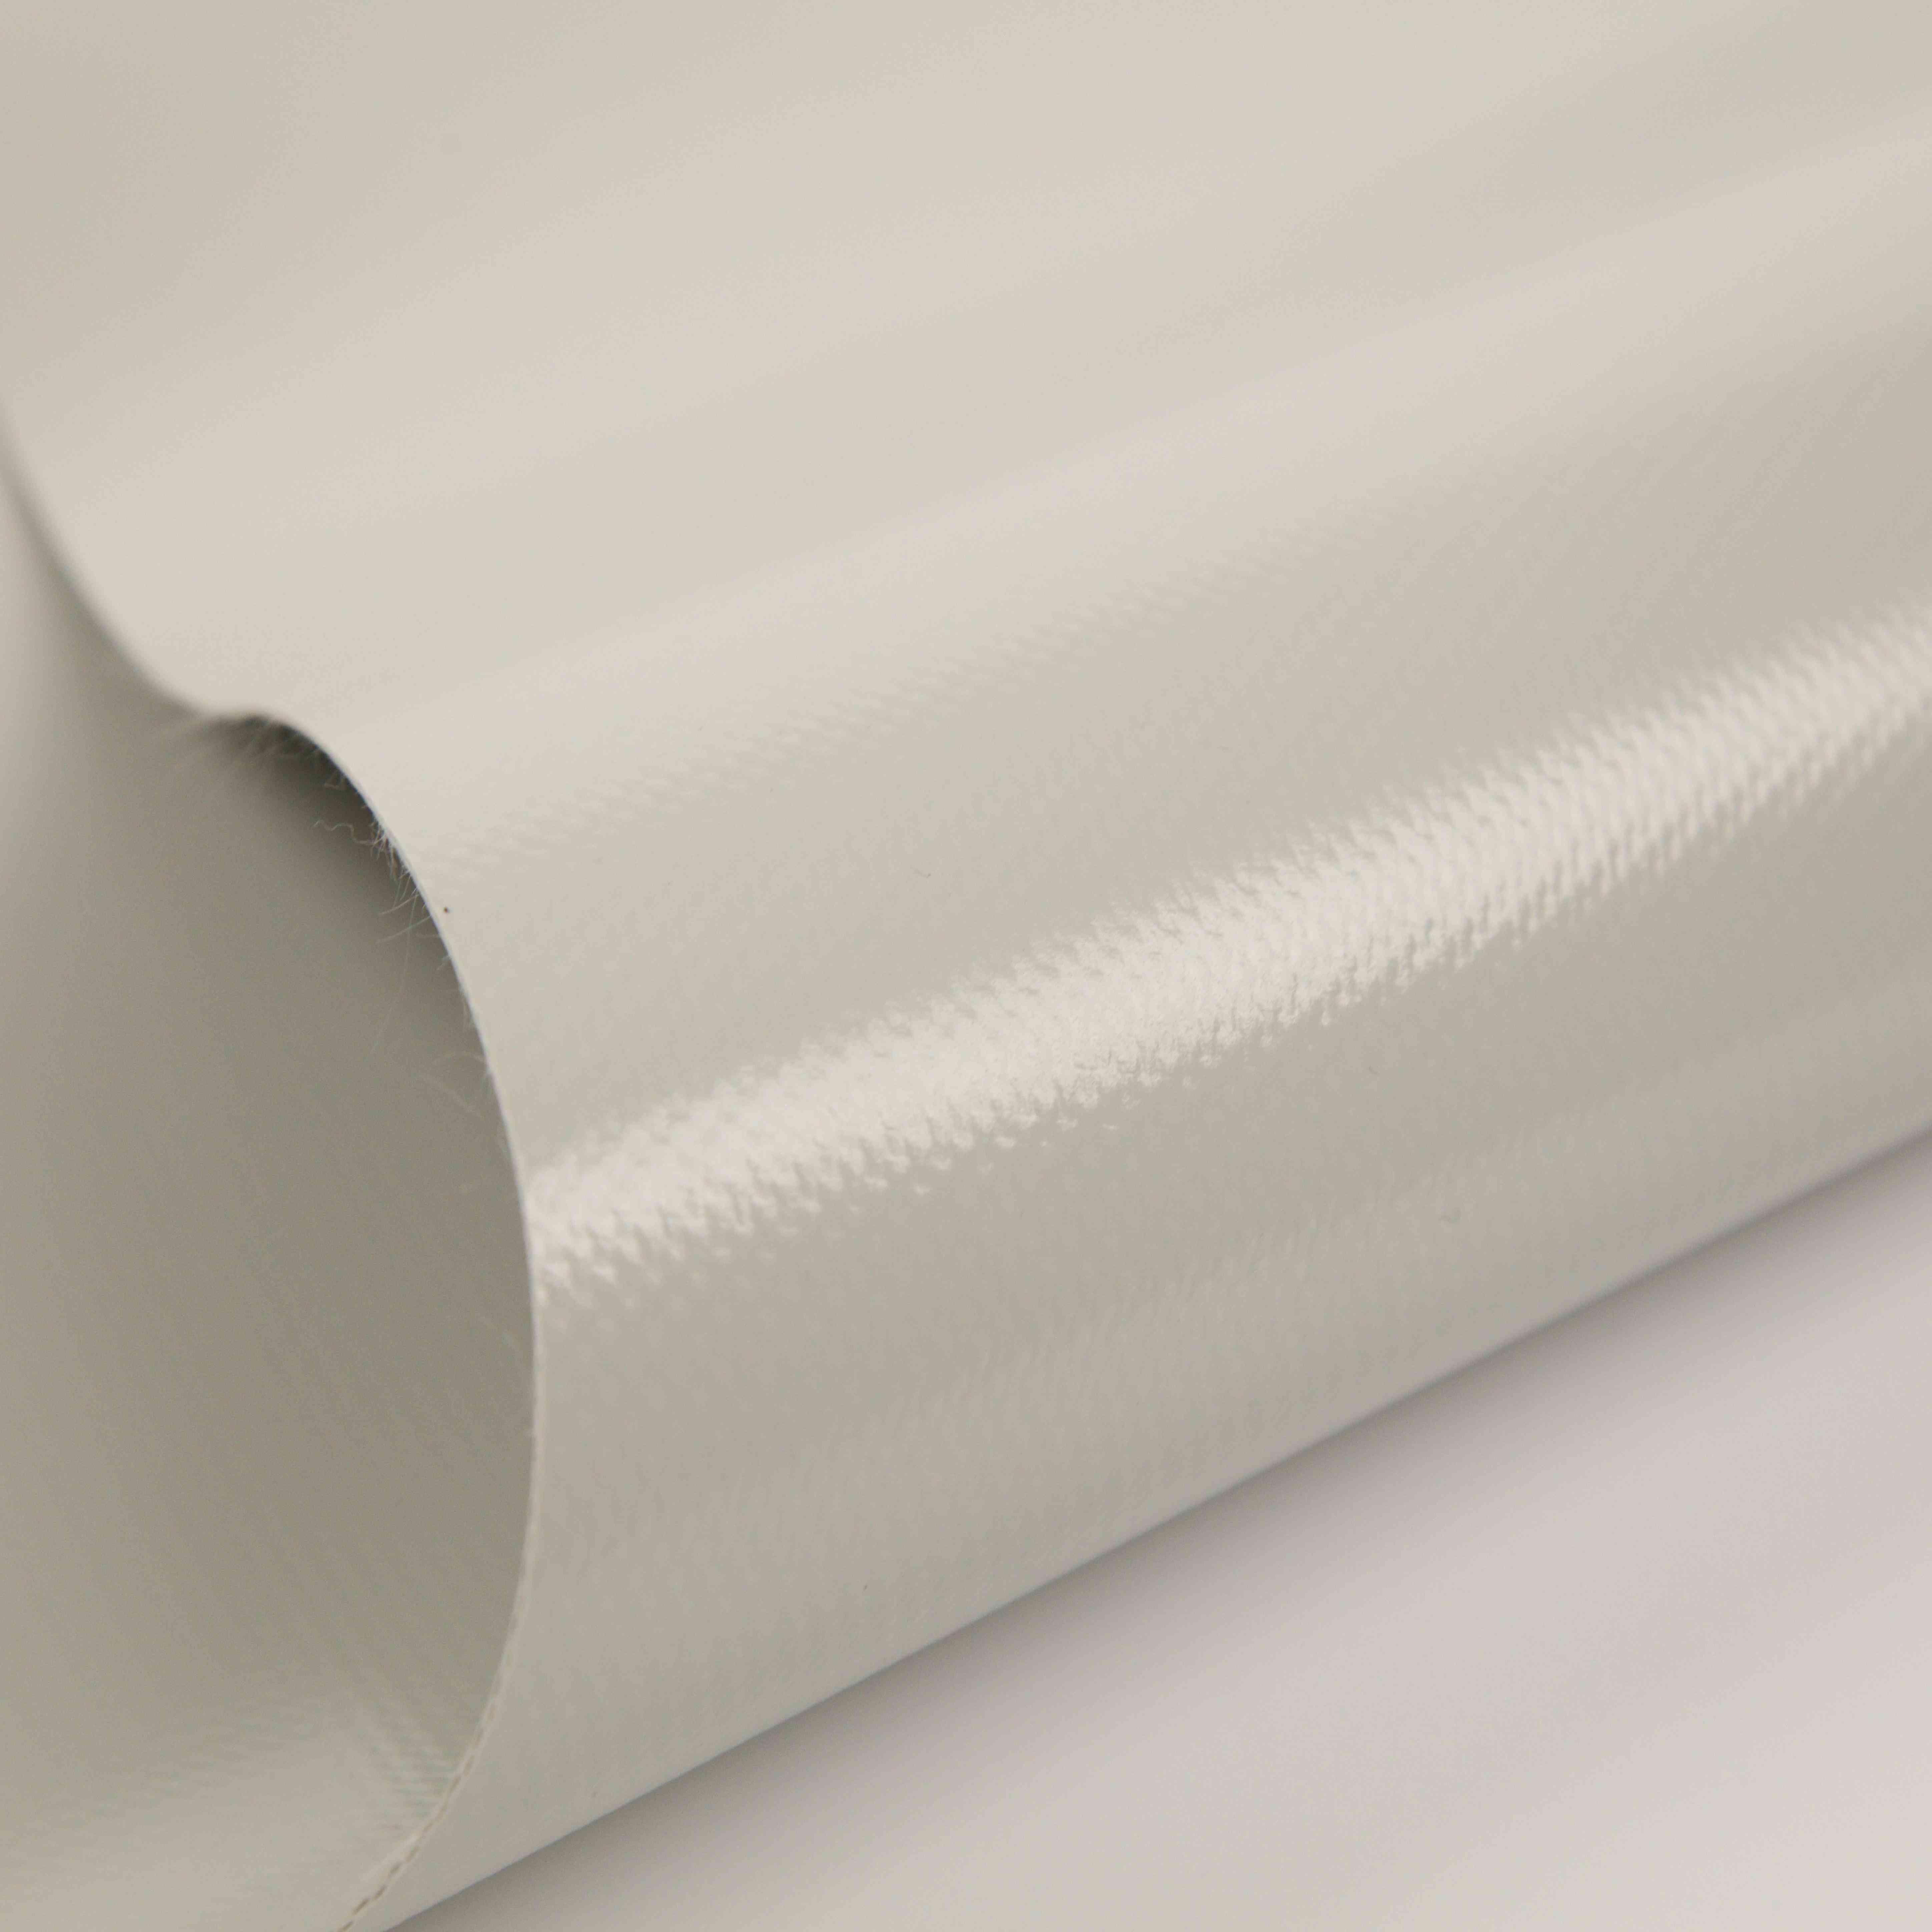 Yatai Textile's PVC Printable Tarpaulin for Truck Covers & Advertising Purposes